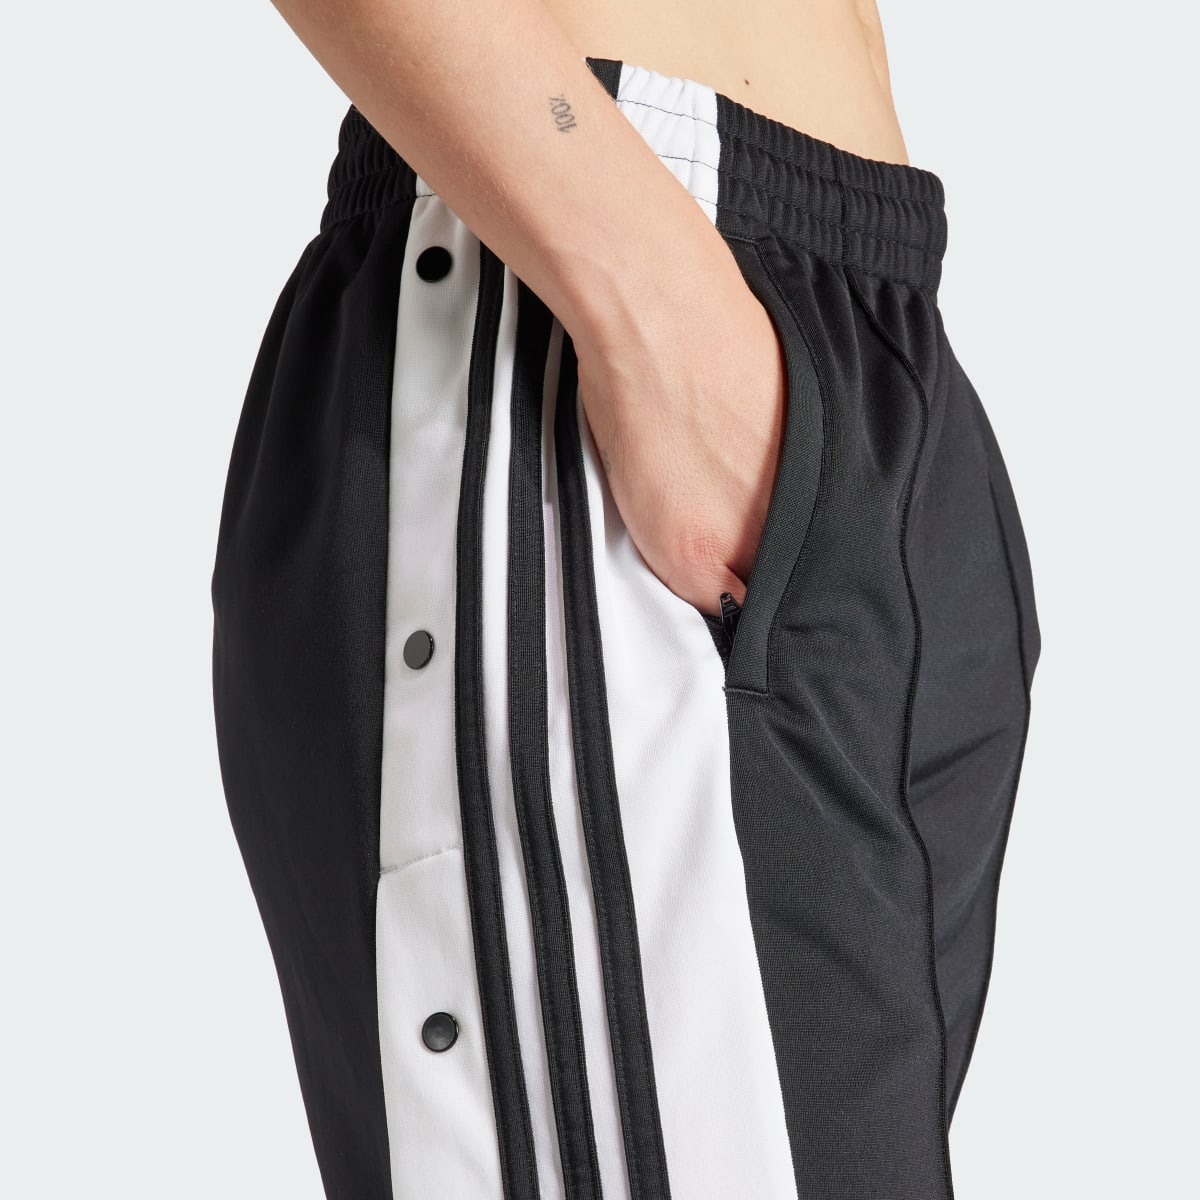 Adidas Adibreak Pants. 6